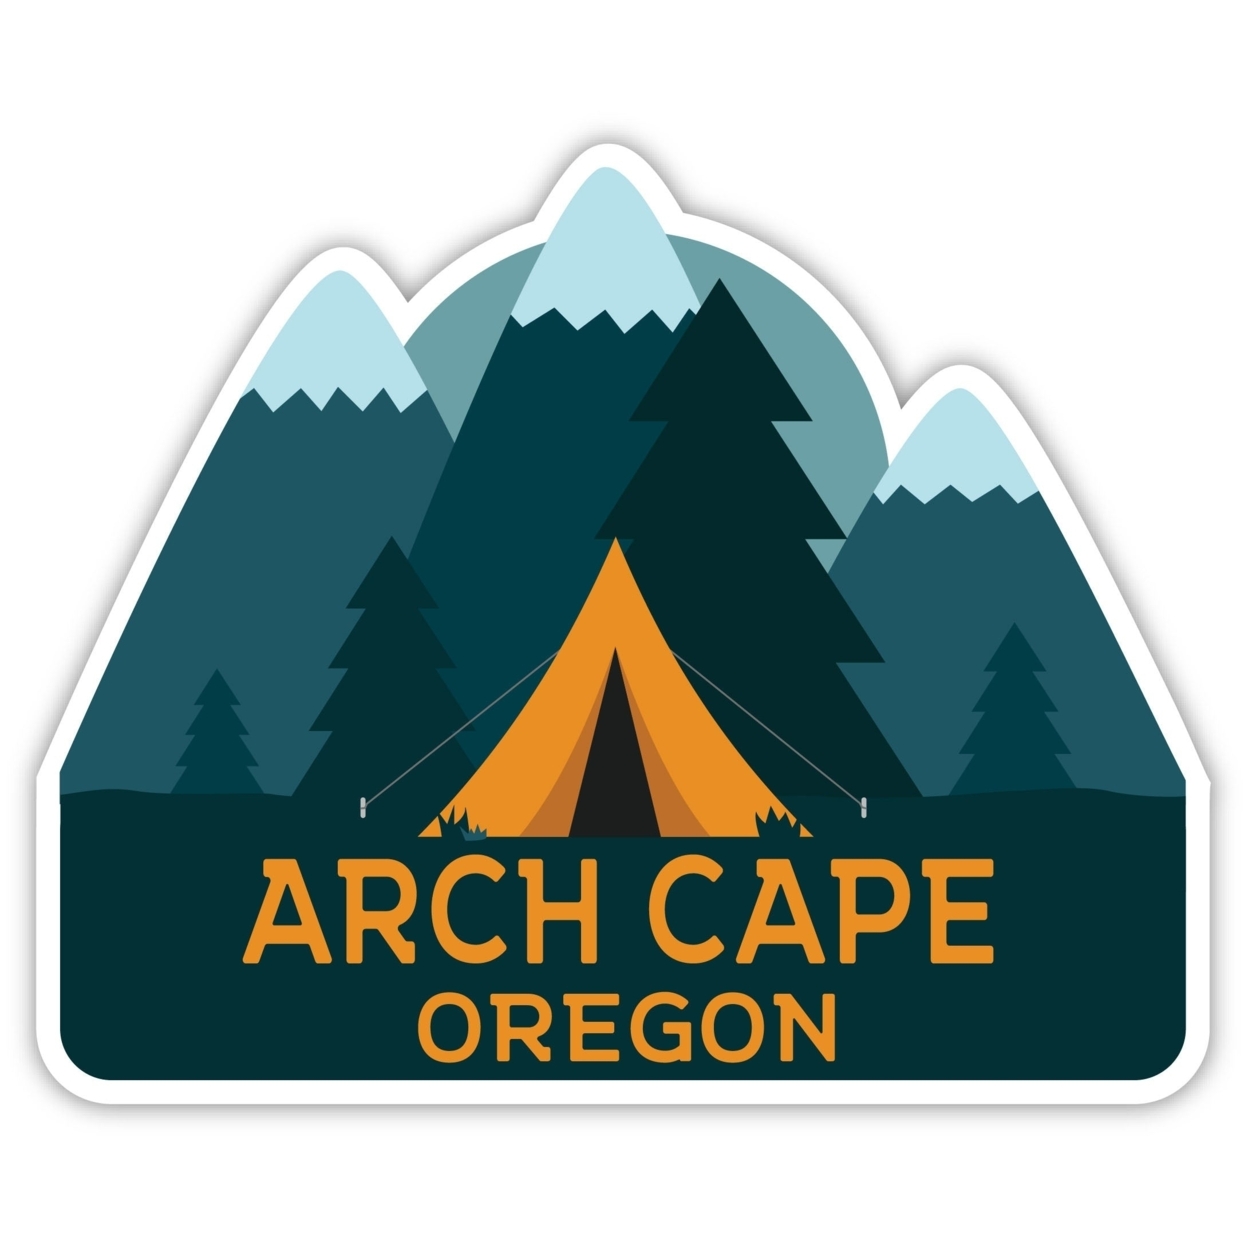 Arch Cape Oregon Souvenir Decorative Stickers (Choose Theme And Size) - Single Unit, 2-Inch, Tent